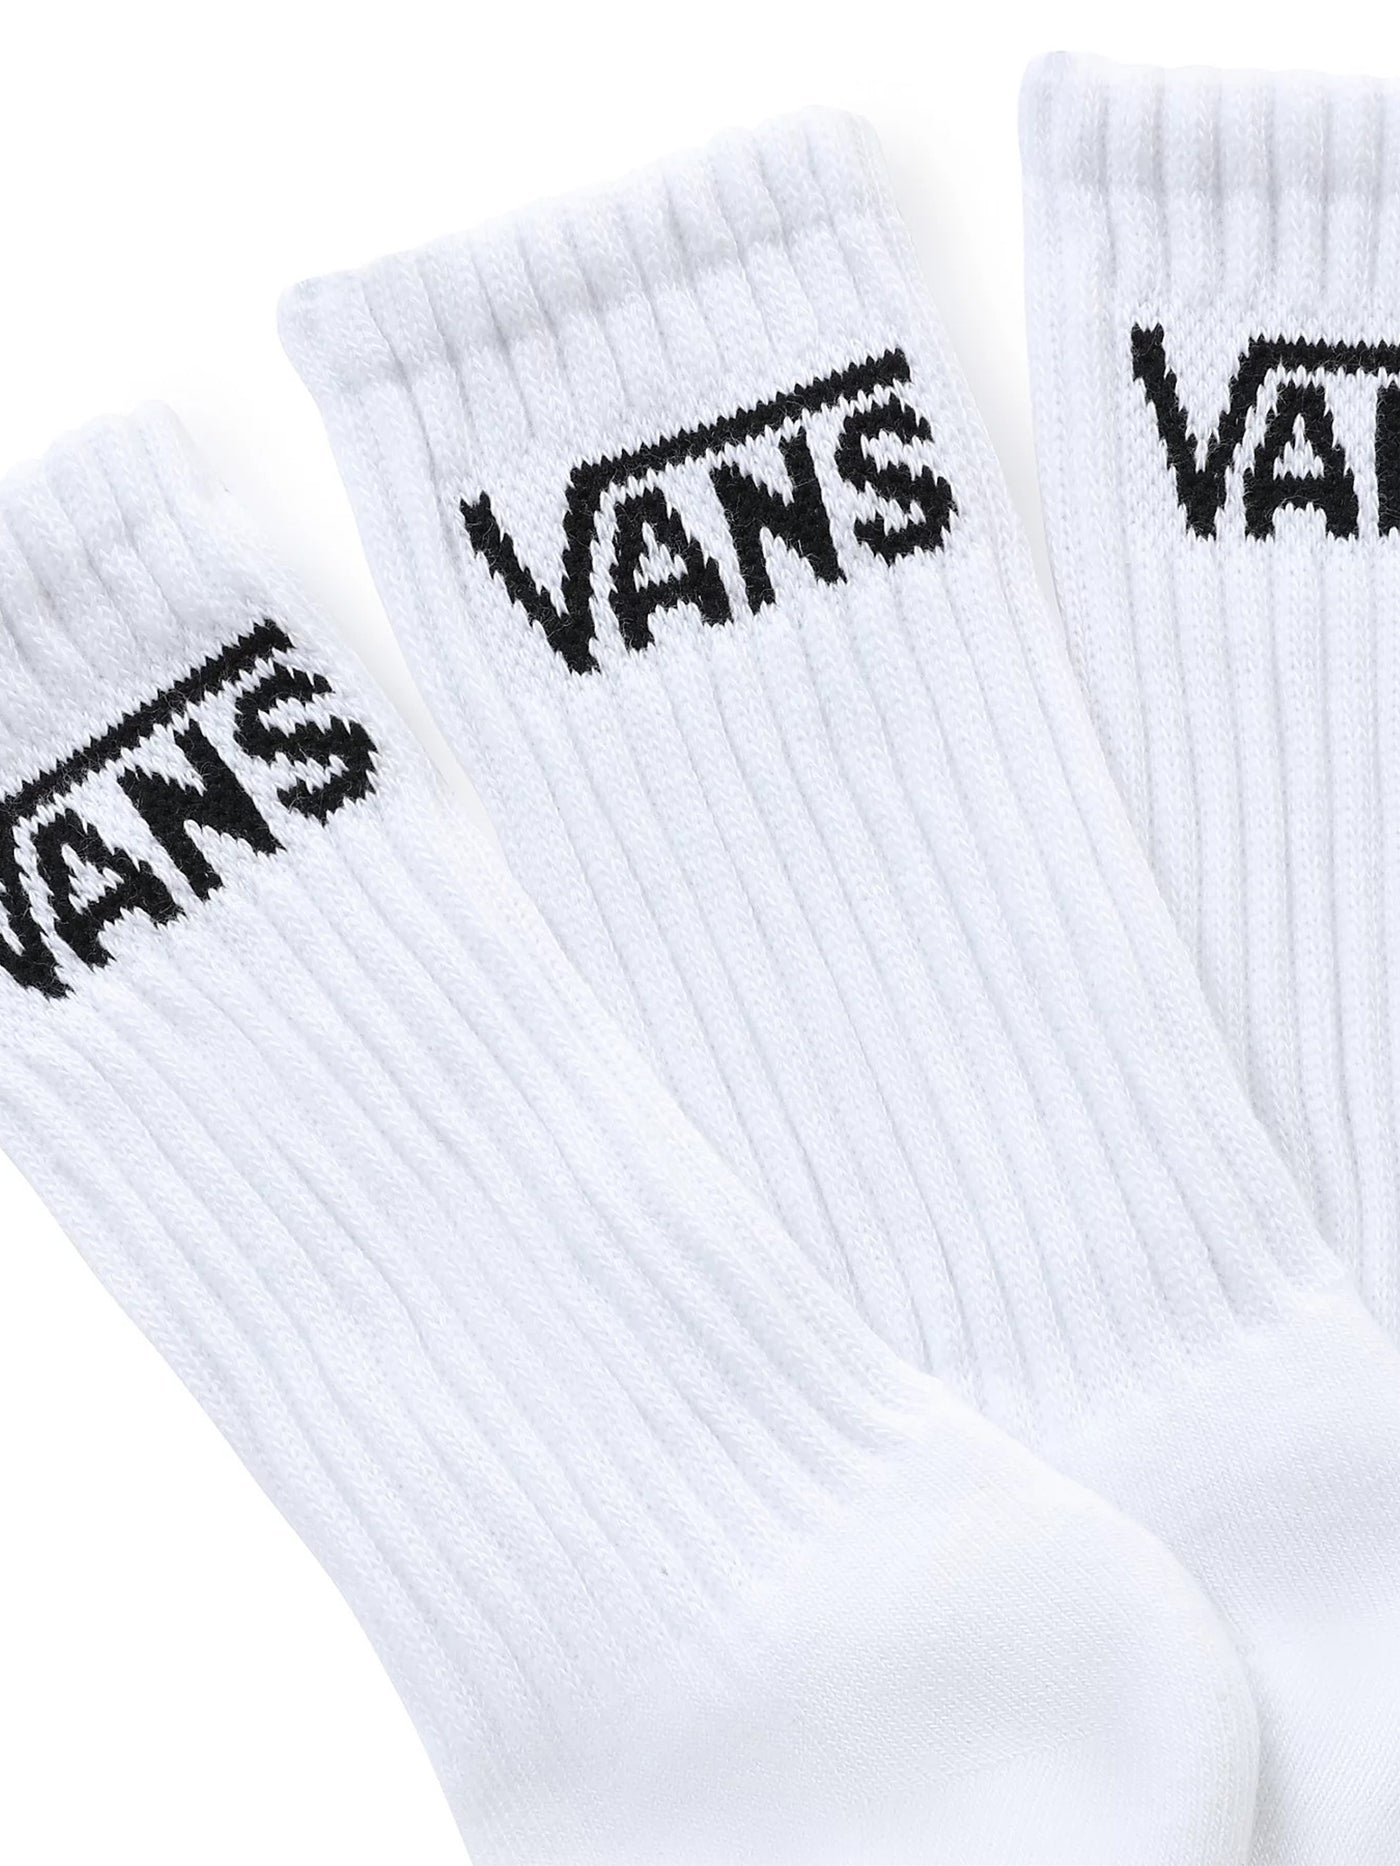 Vans Classic 10-13.5 3 Pack Socks